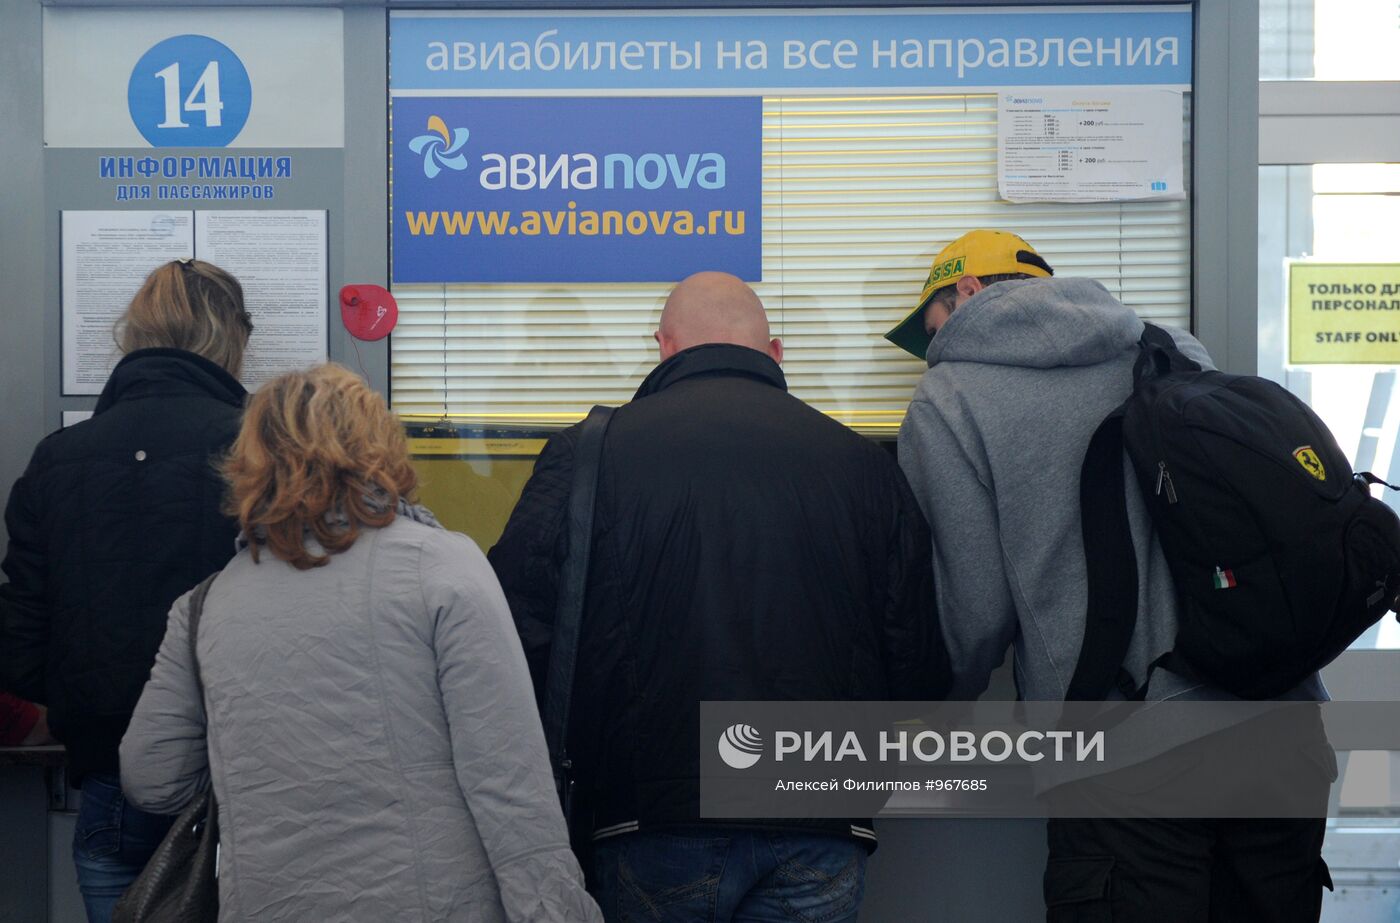 Авиакомпания "Авианова" приостановила продажу билетов